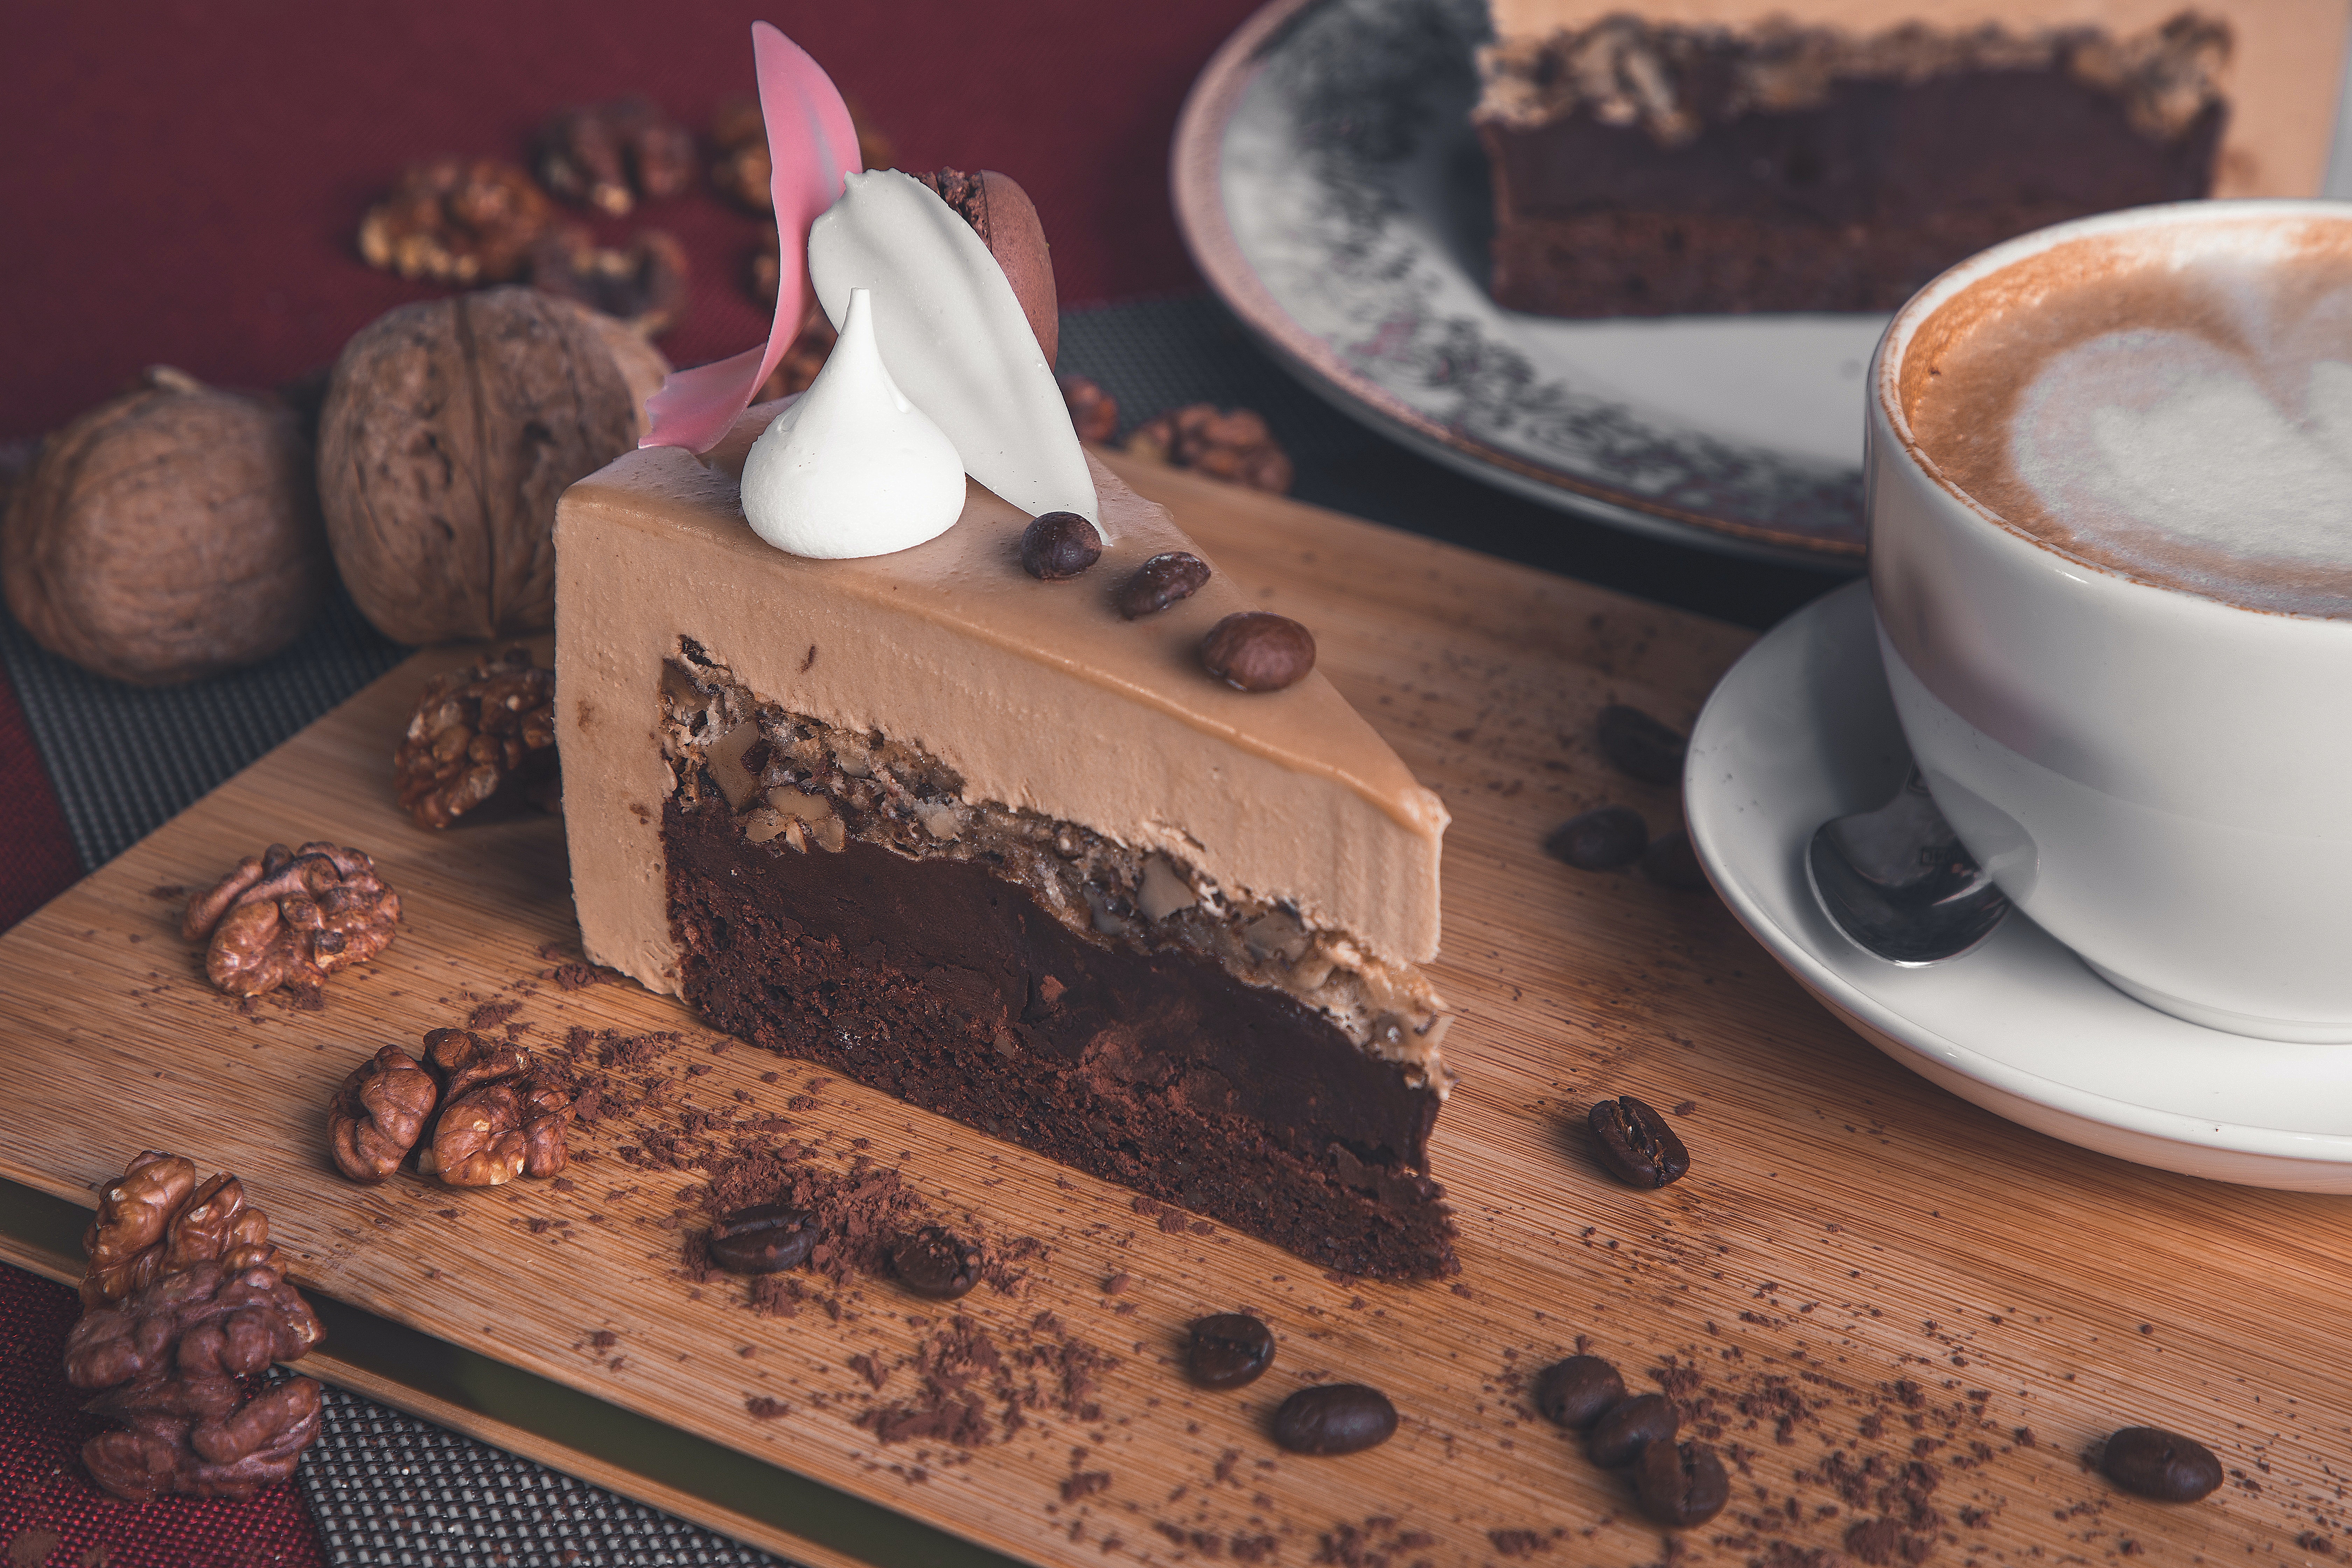 Szybkie ciasto. Mocha — przepyszny deser dla fanek kawy z czekoladą |  Ofeminin